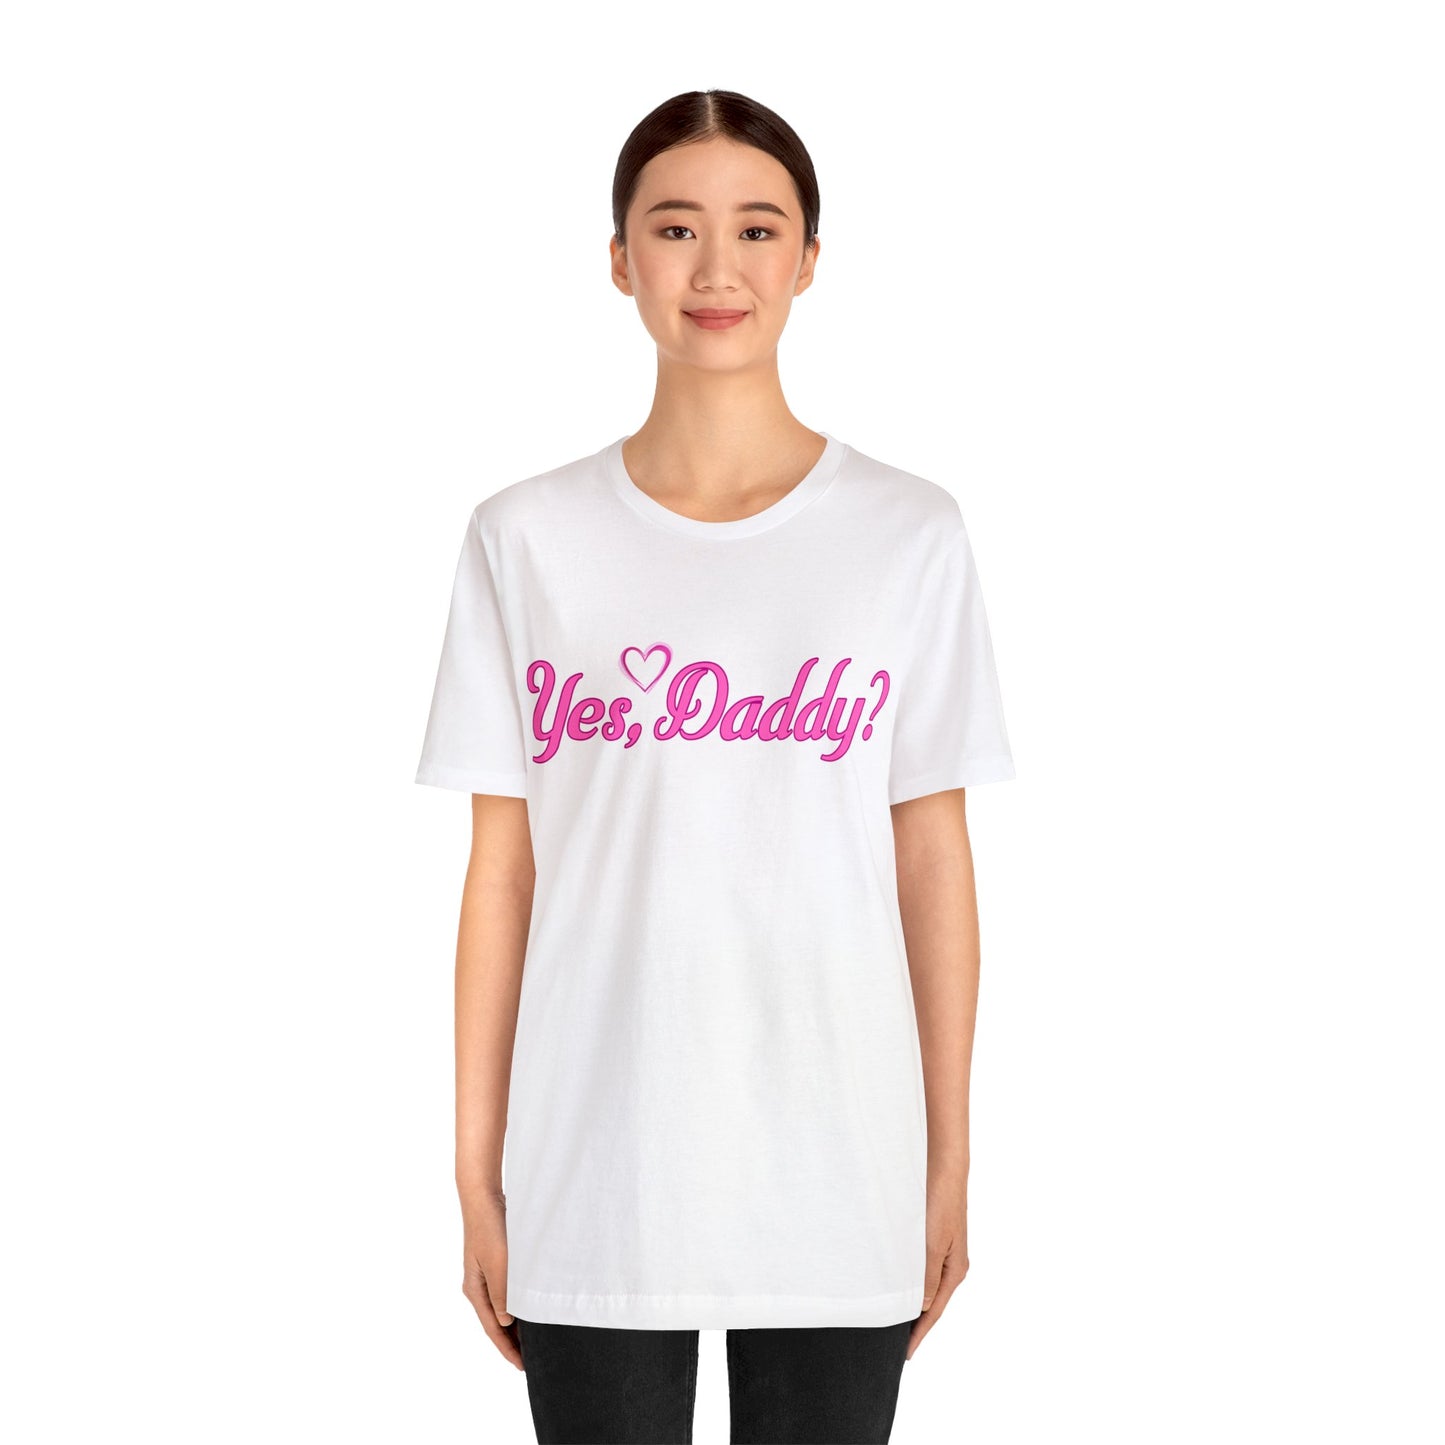 Yes Daddy Shirt | Adult Shirt | Sexy Shirt | BDSM Shirt  | Kinky Shirt